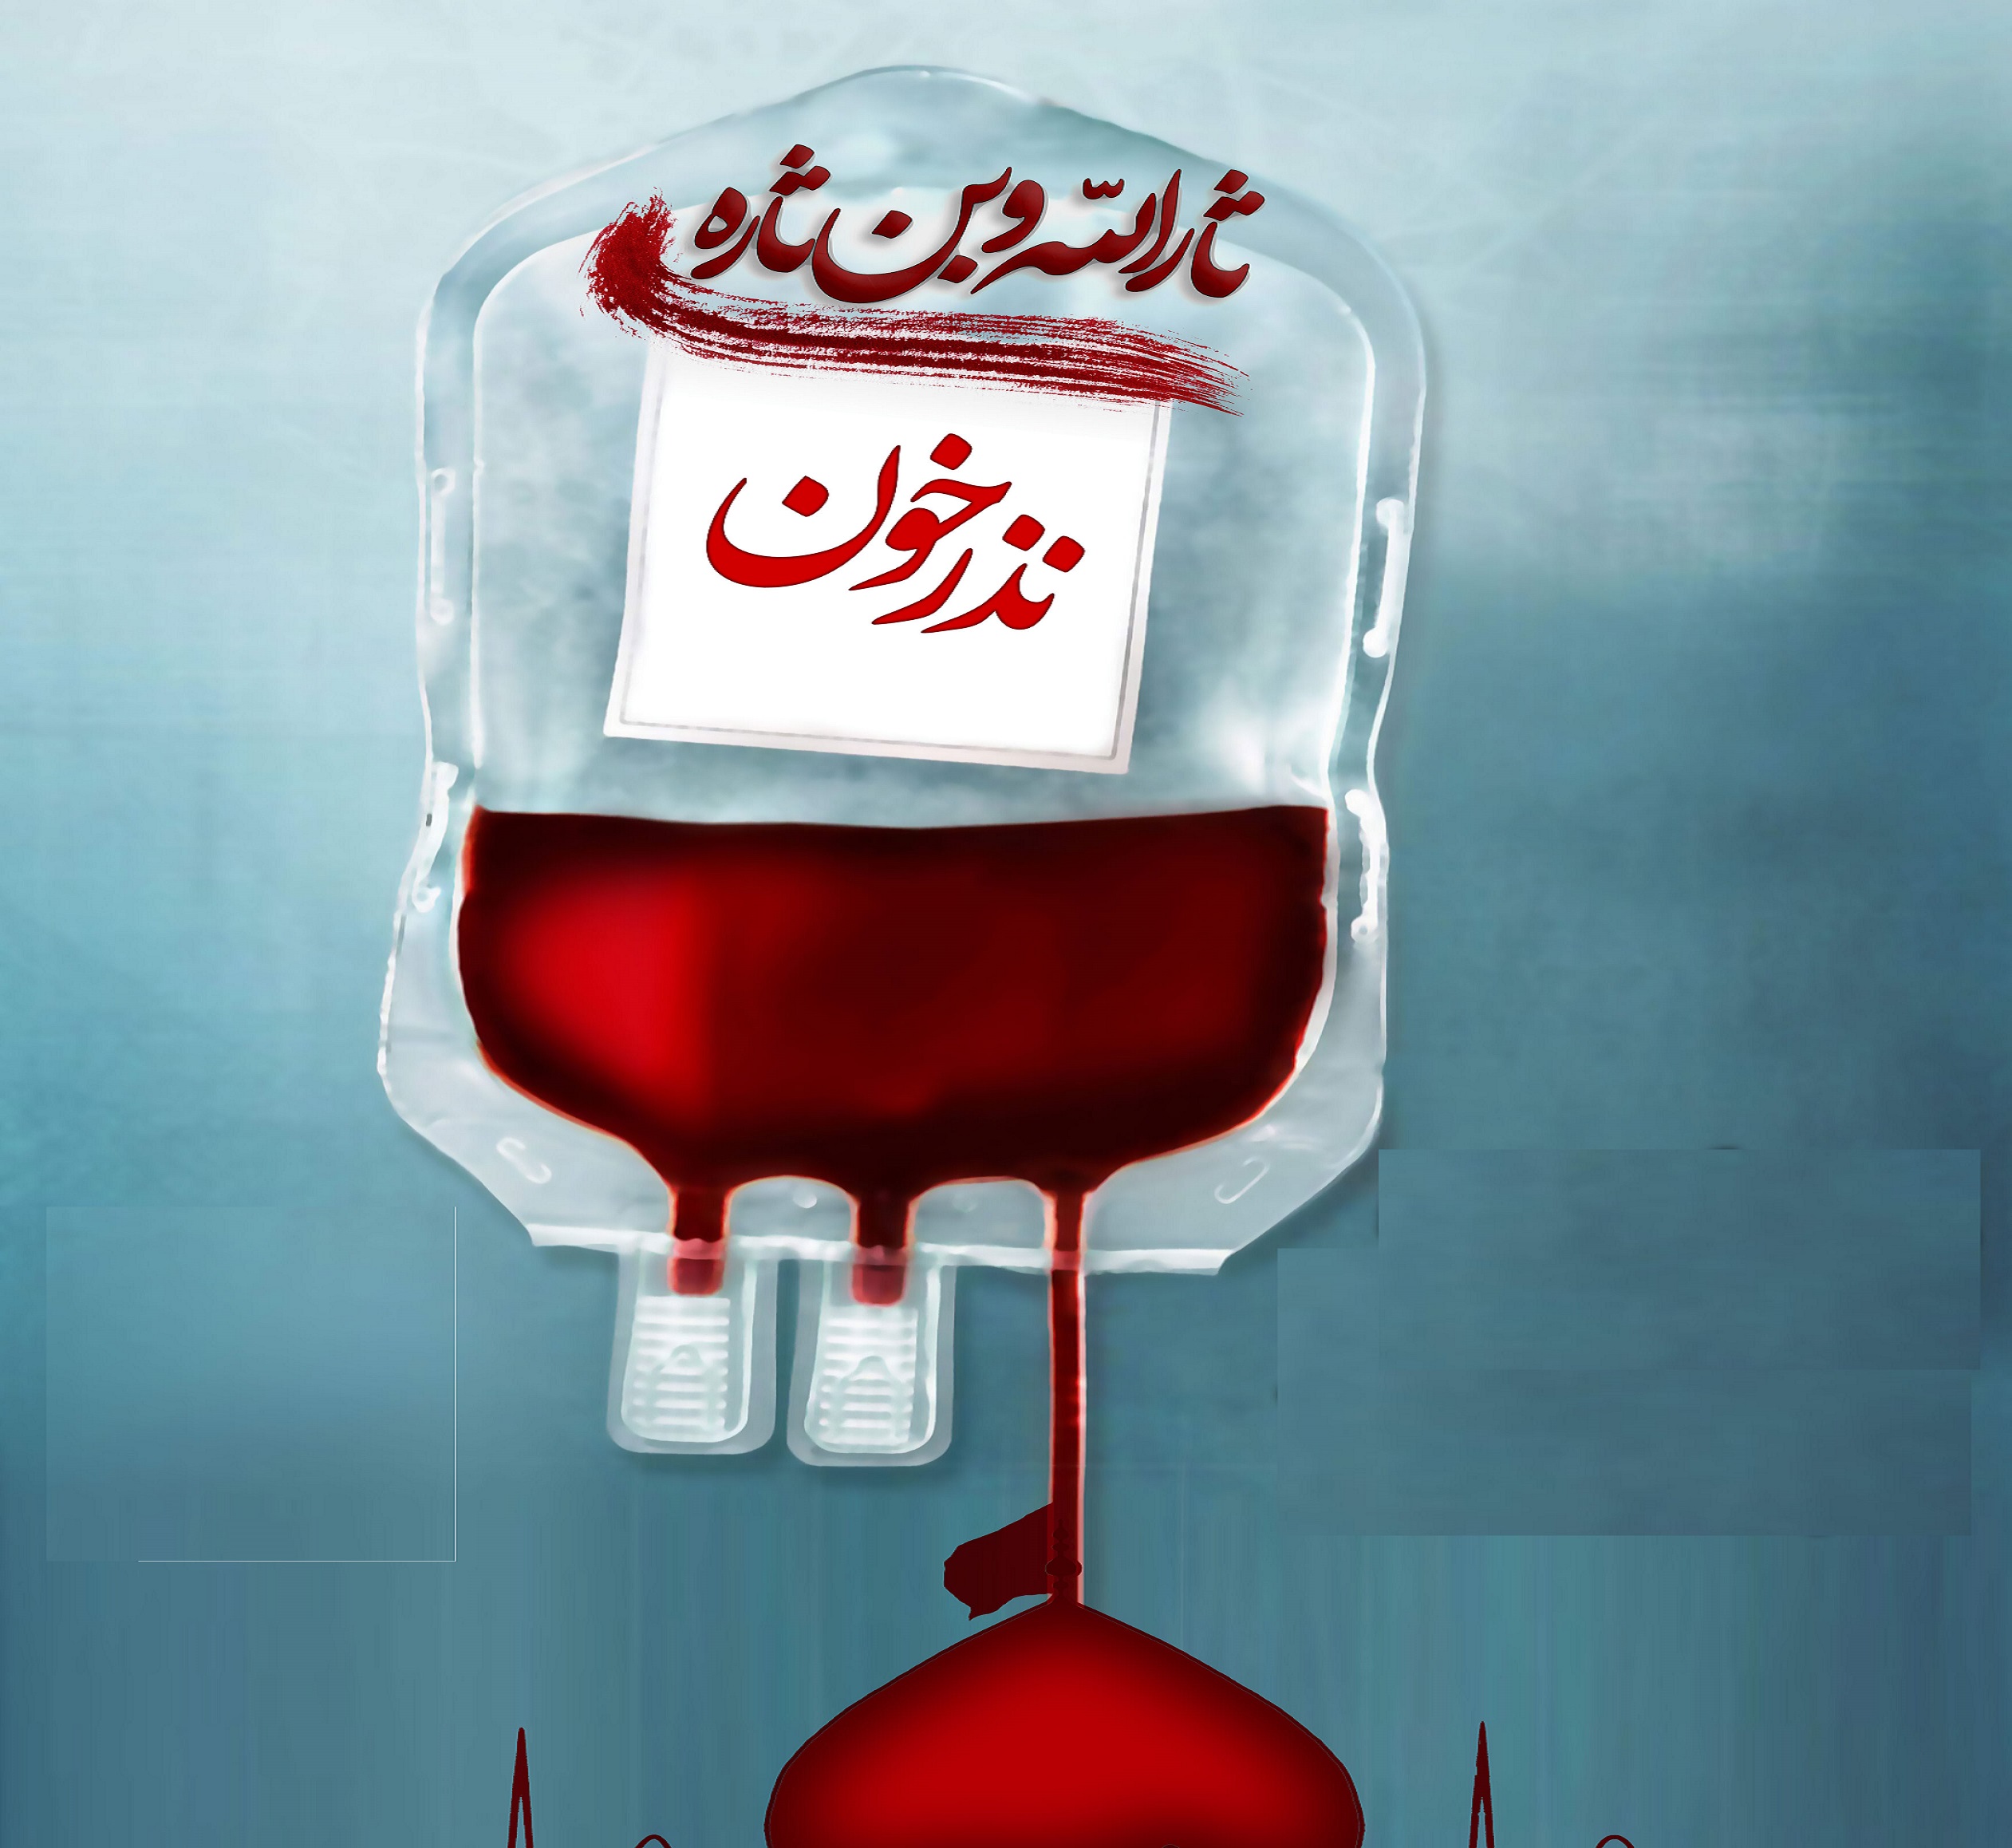 بیش از ۳ هزار نفر در پویش اهدا نذر خون به یاری بیماران شتافتند